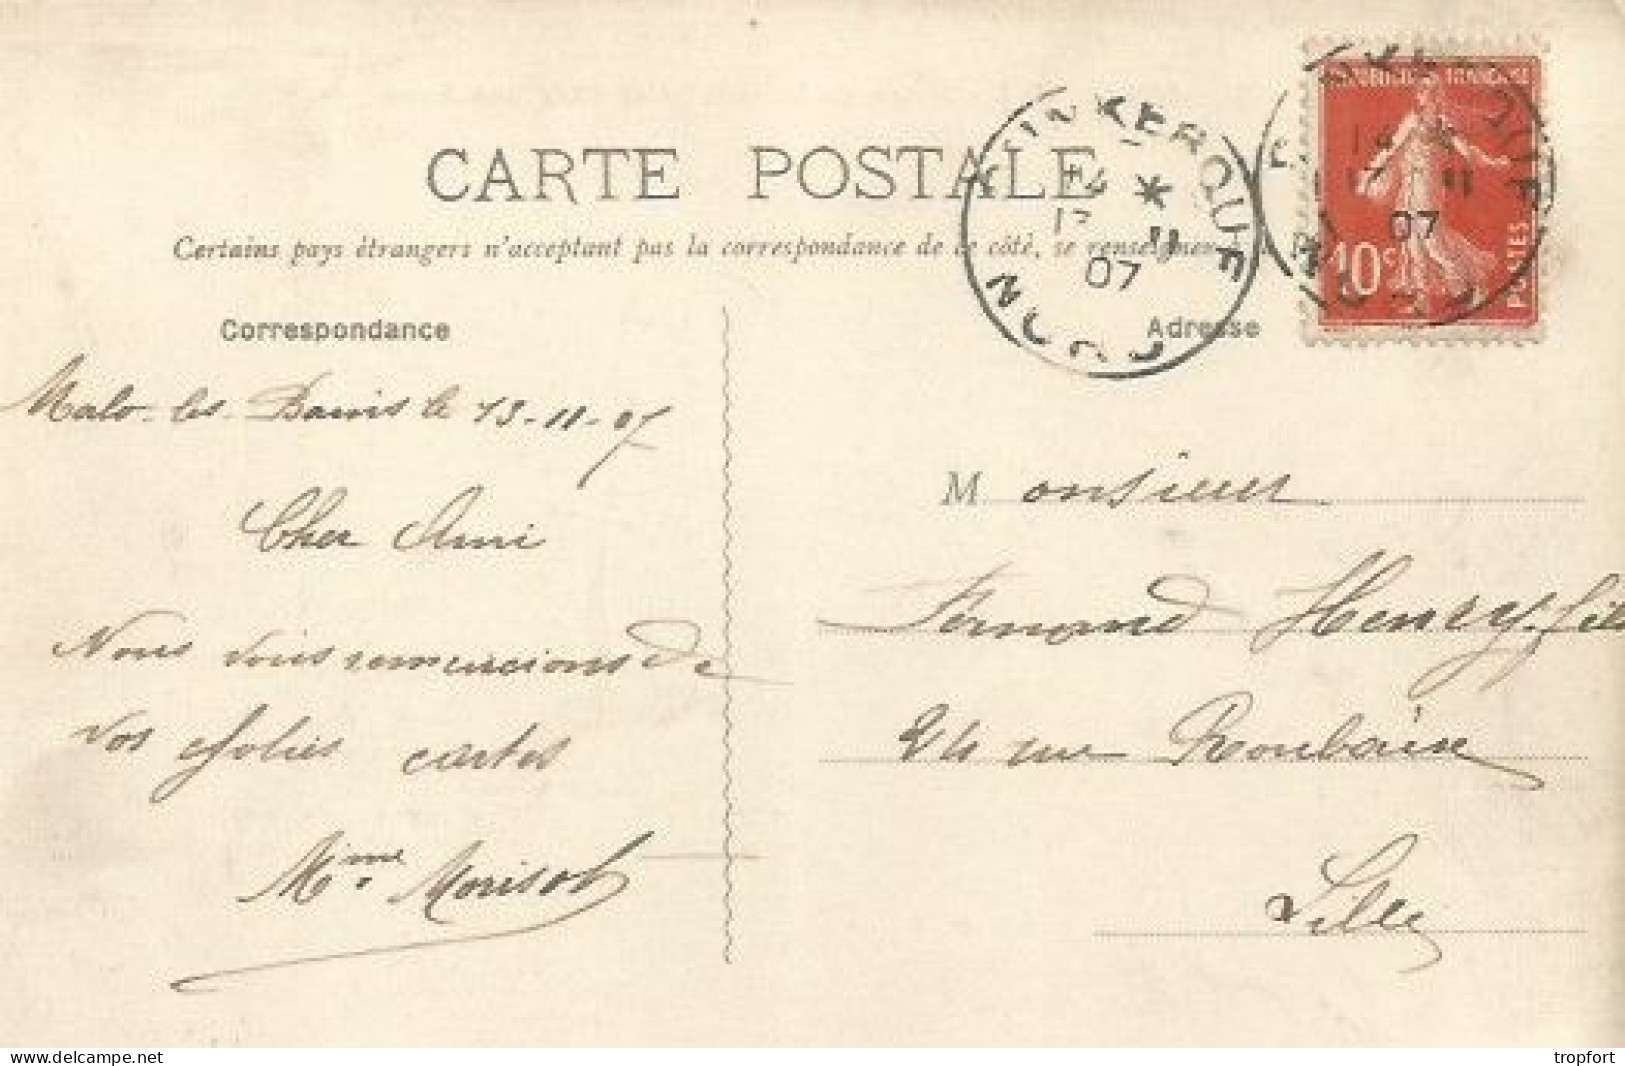 CPA Carte Postale 1907  DUNKERQUE 59   Statue De La VICTOIRE - Dunkerque